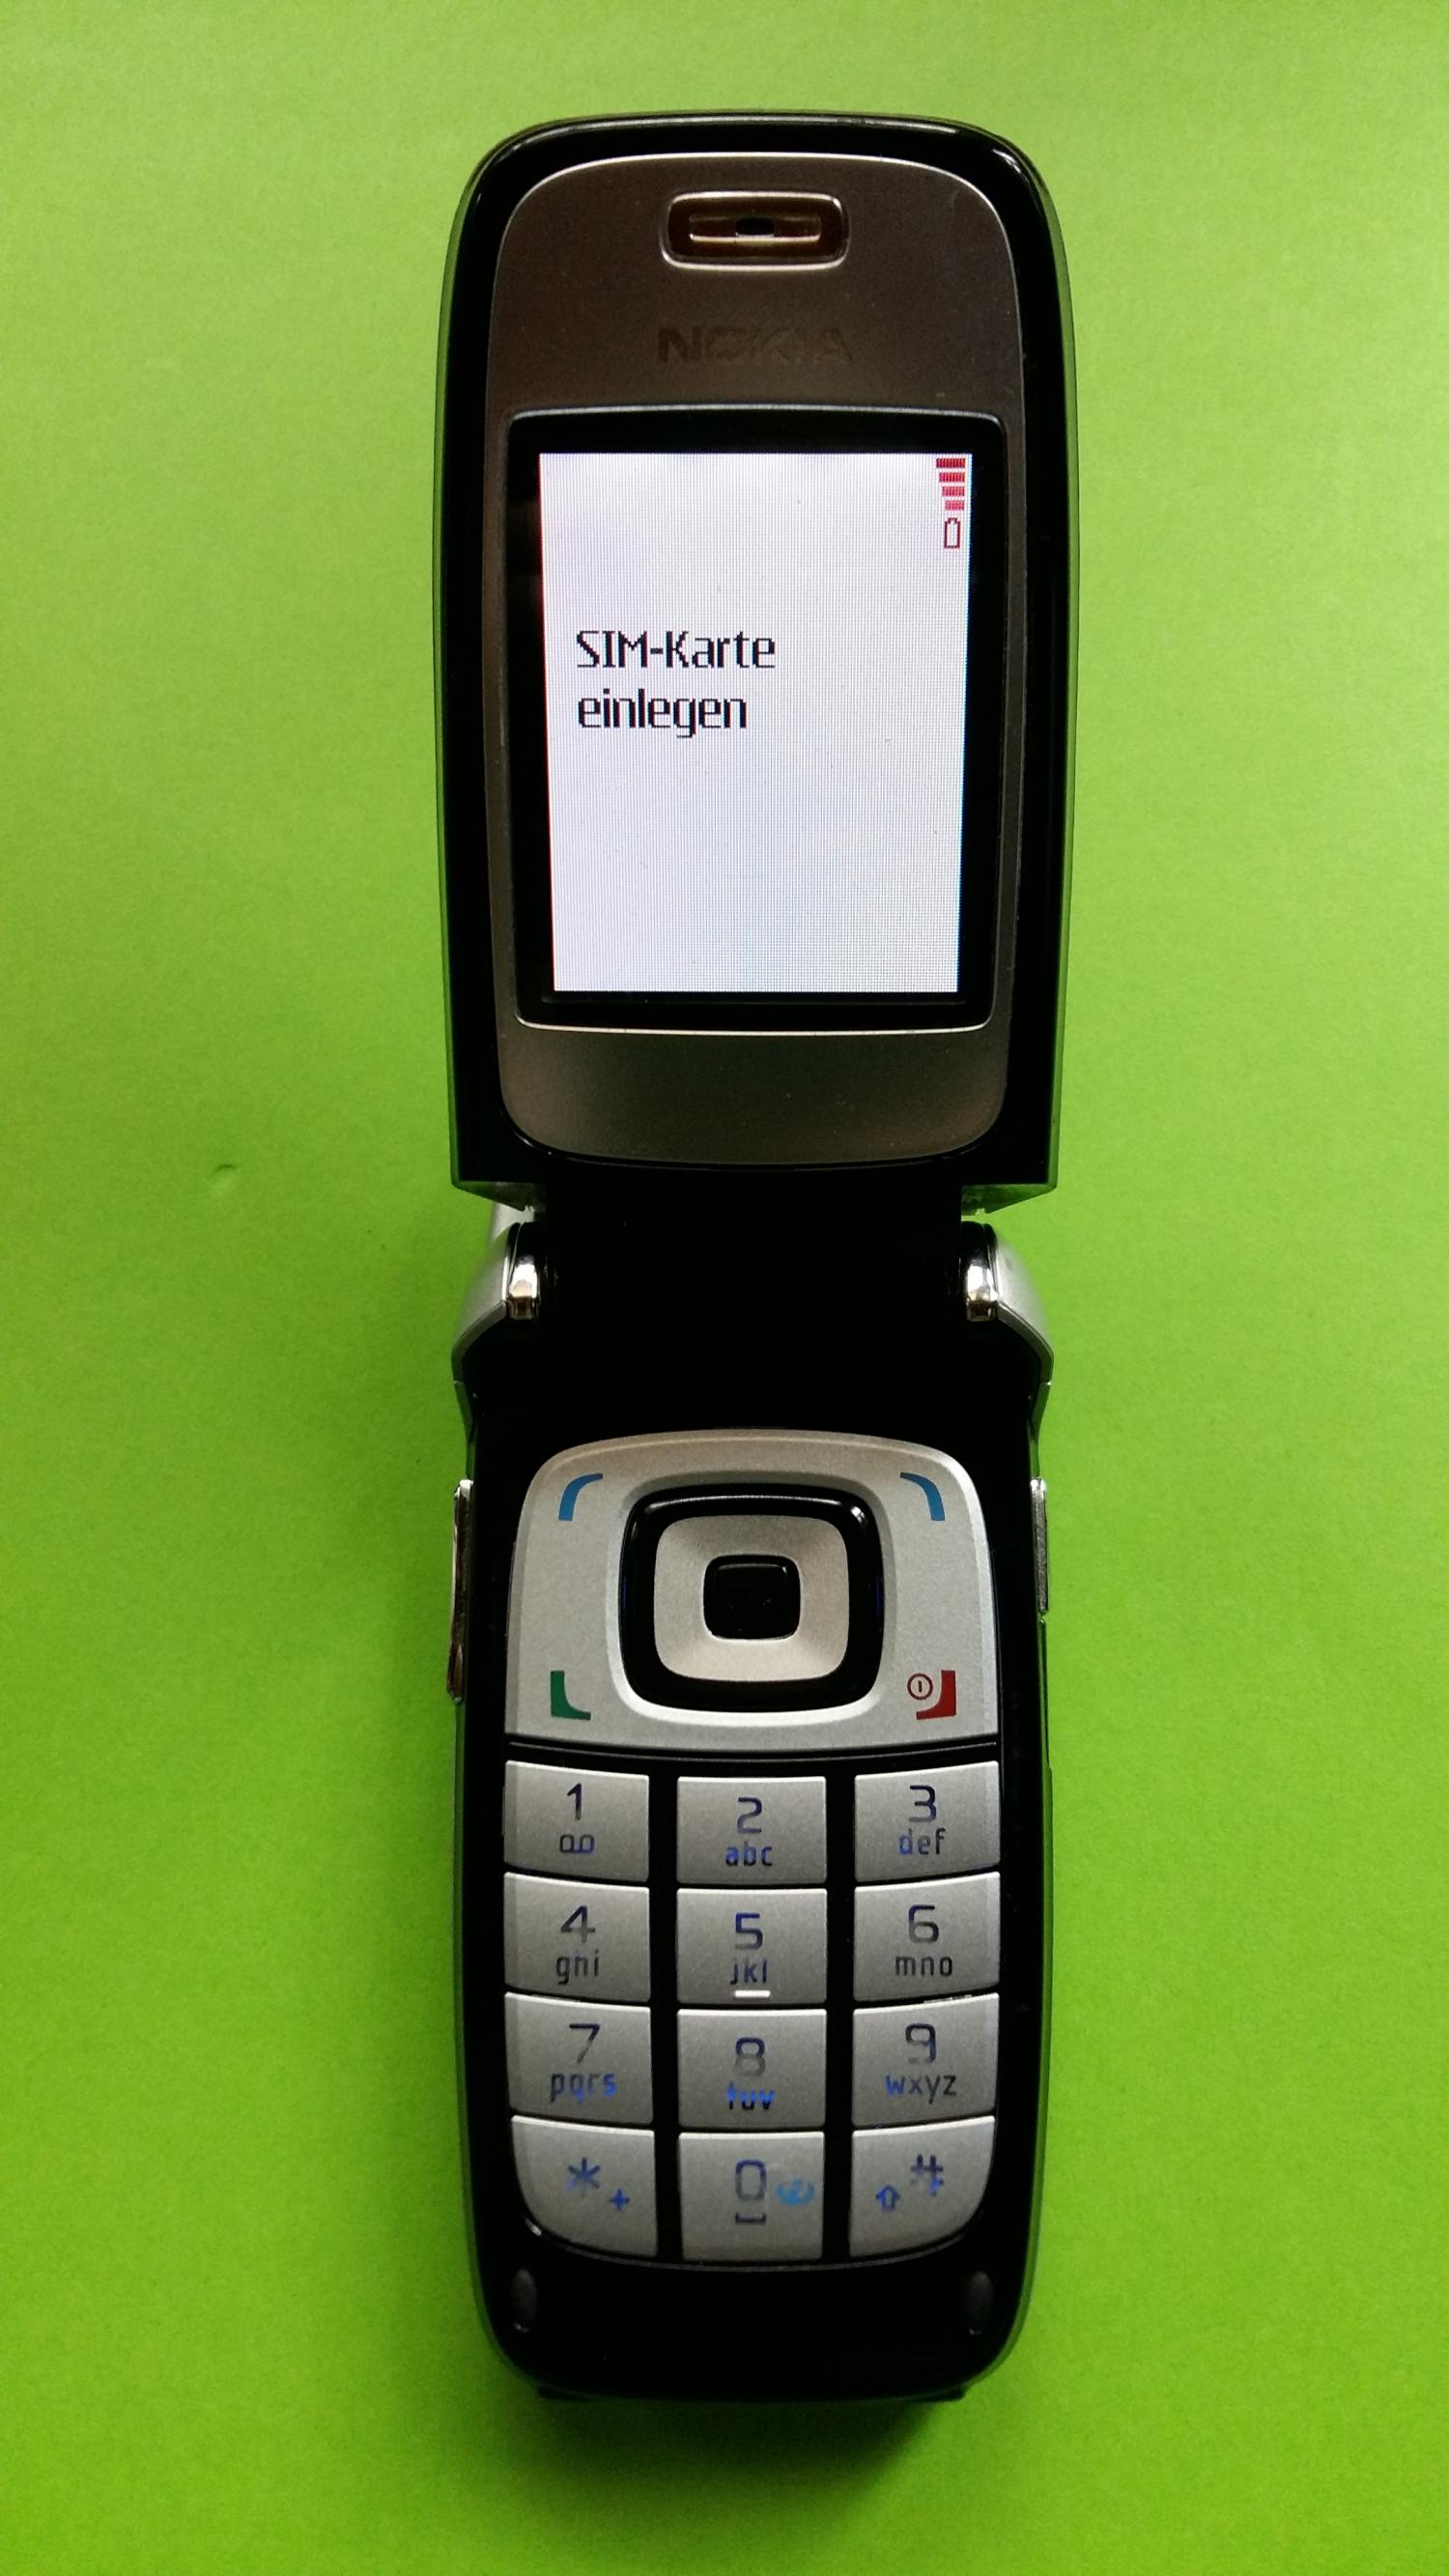 image-7323633-Nokia 6101 (6)2.jpg